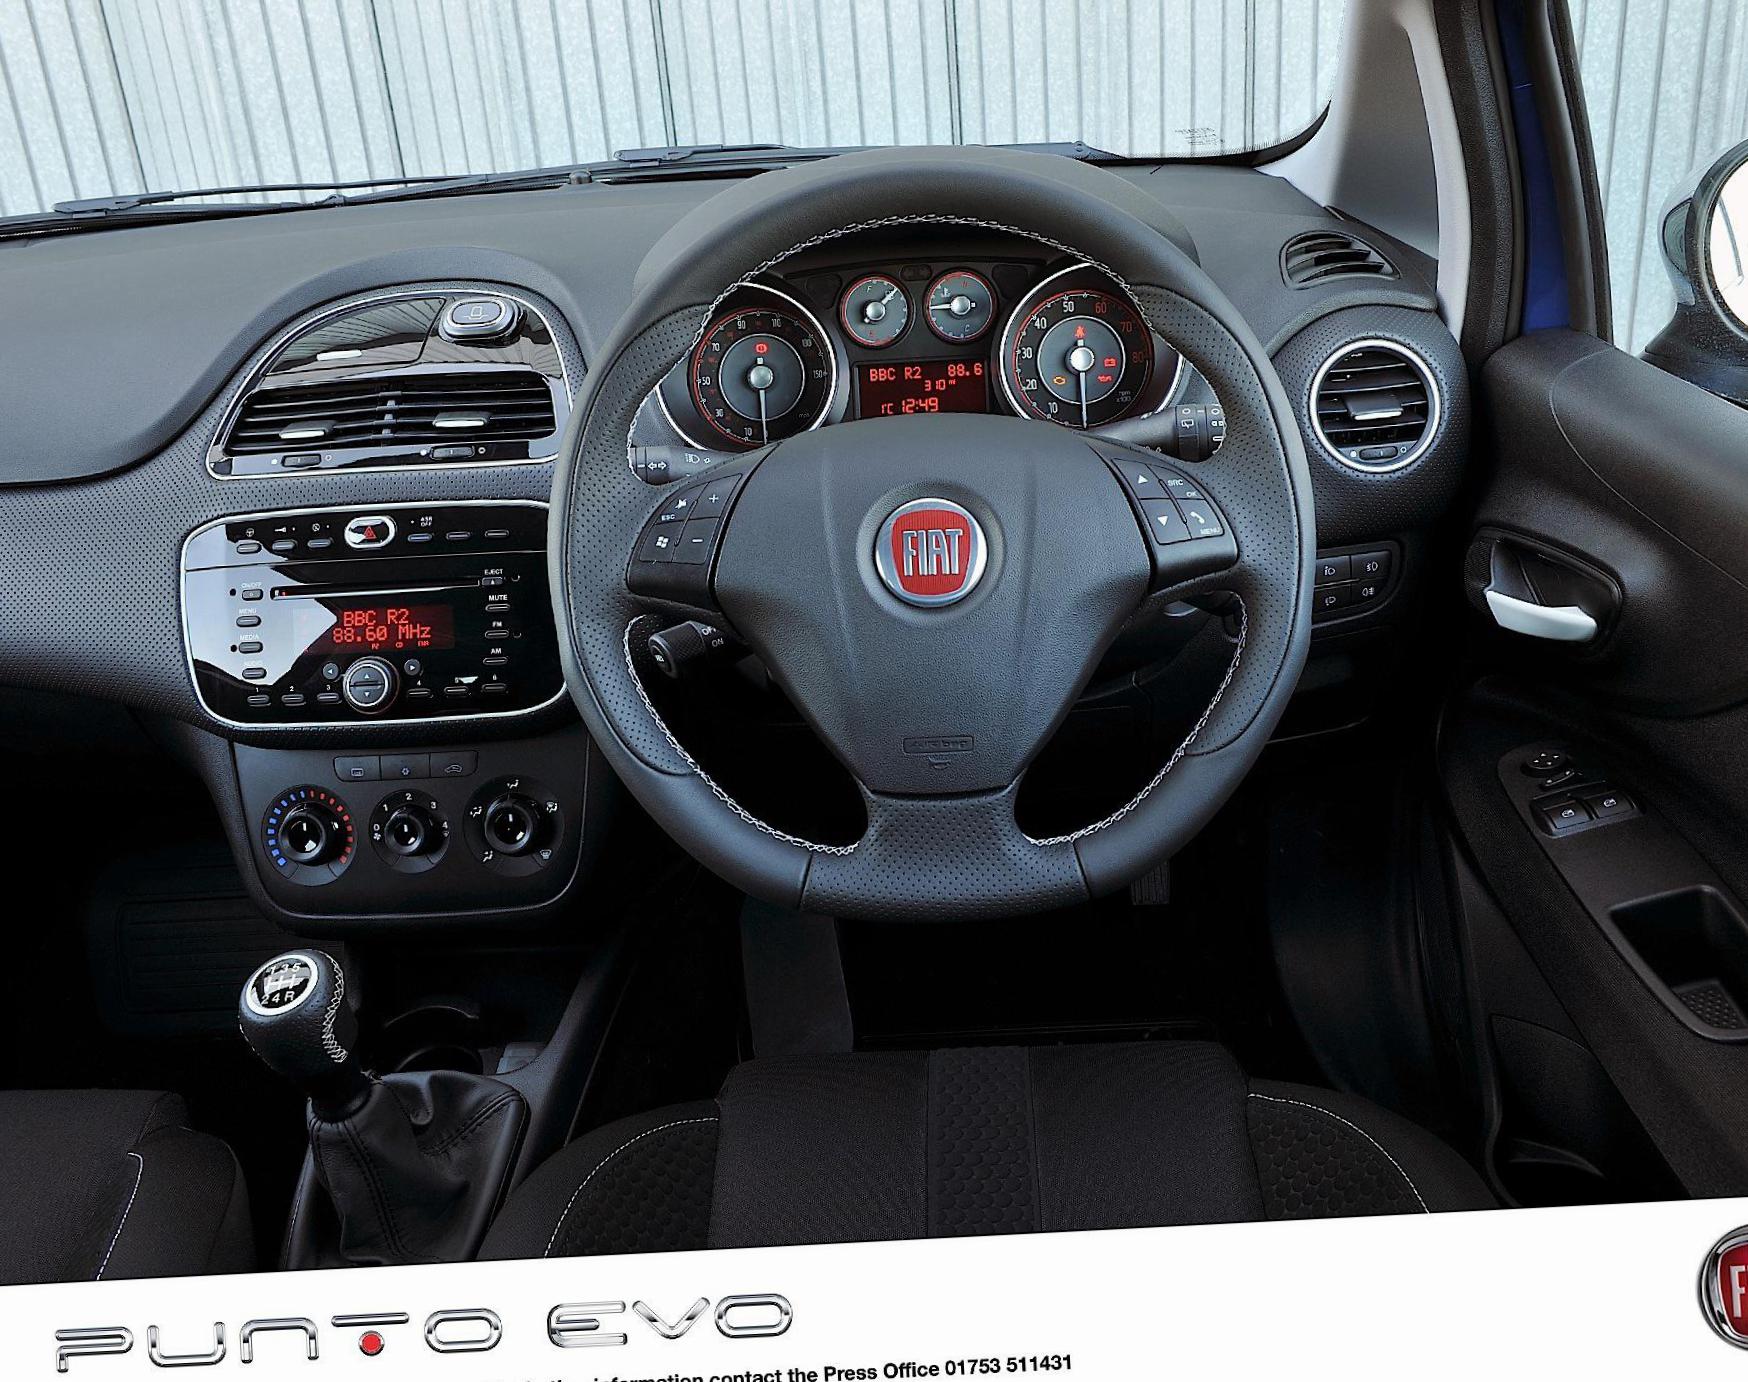 Punto Evo 5 doors Fiat cost hatchback